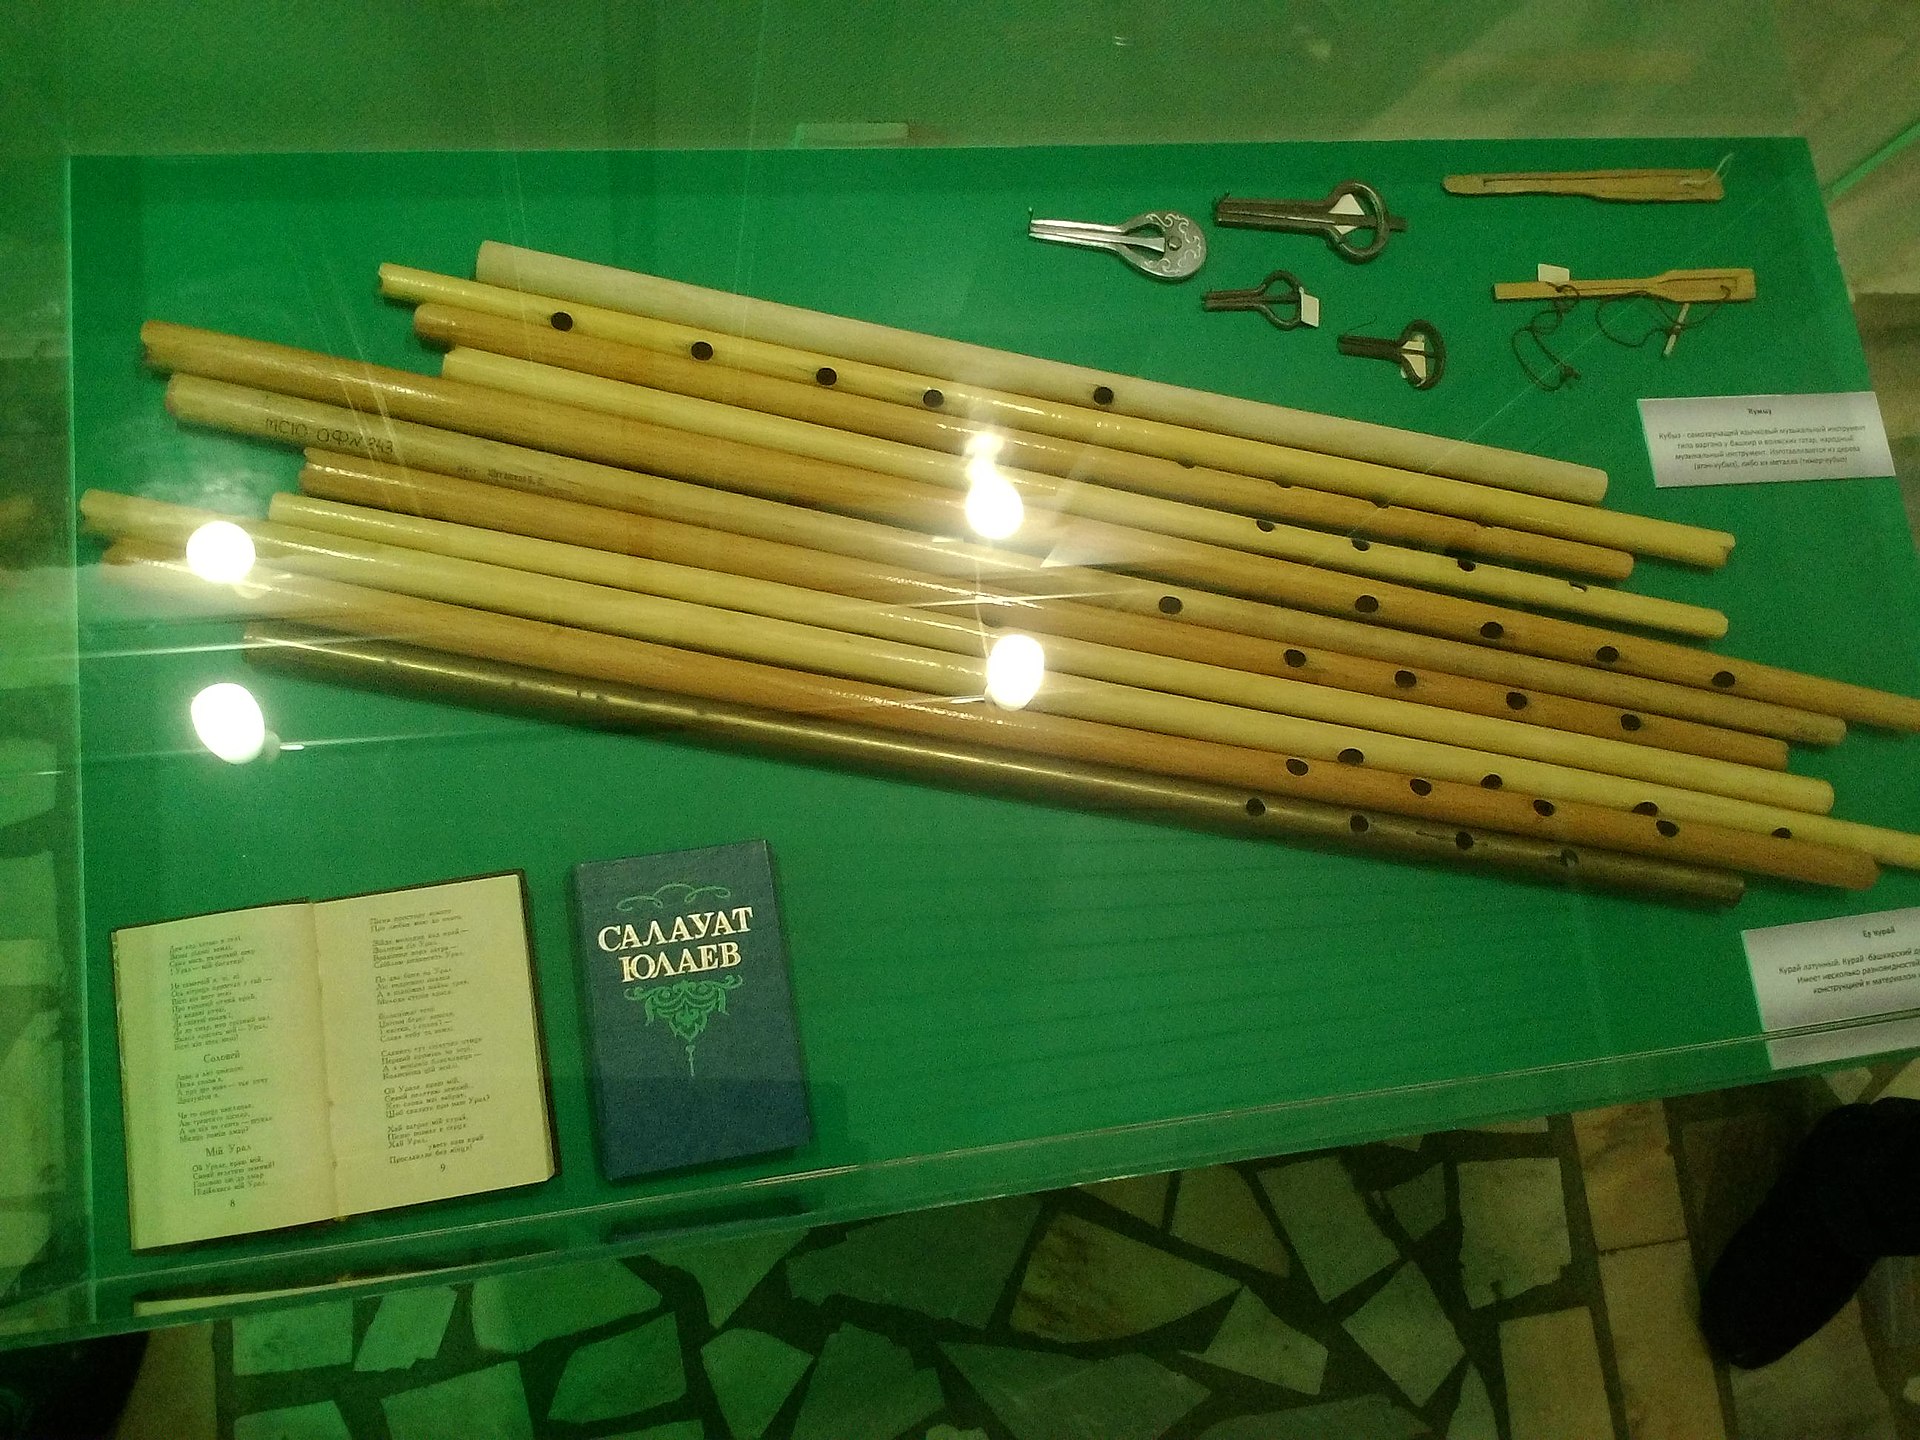 Башкирские музыкальные инструменты